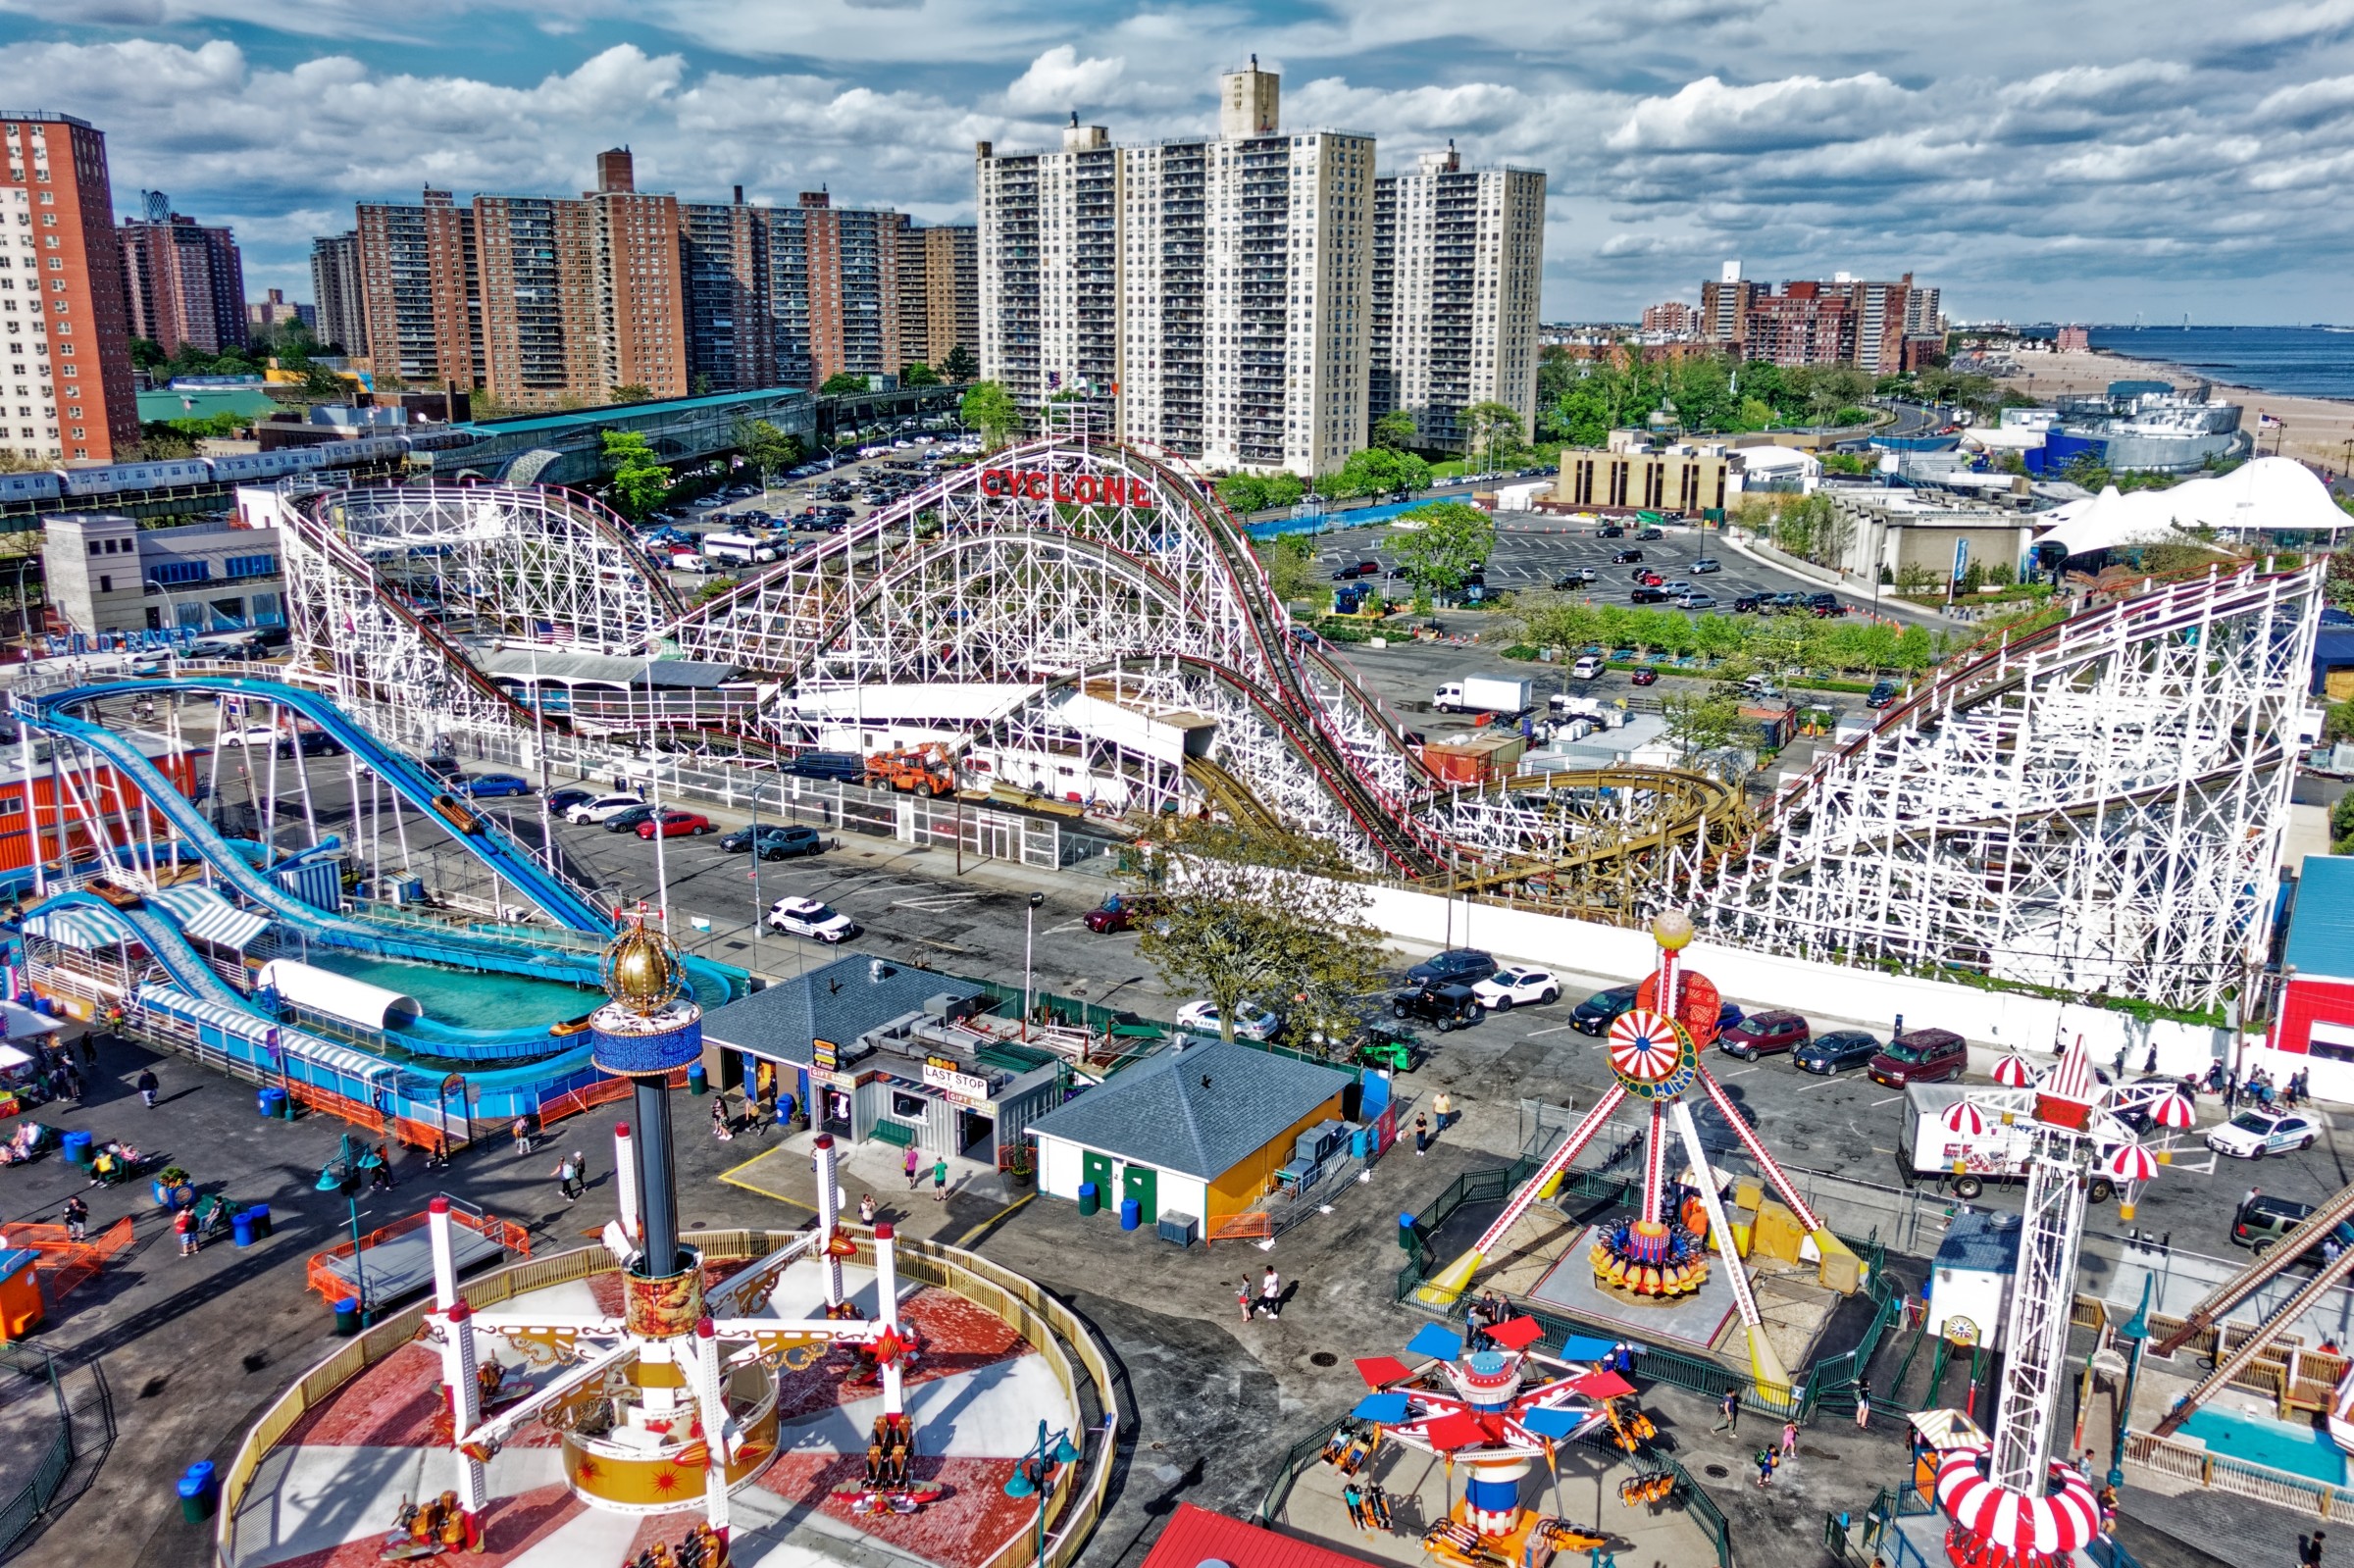 Luna Park In Coney Island Coney Island Rides